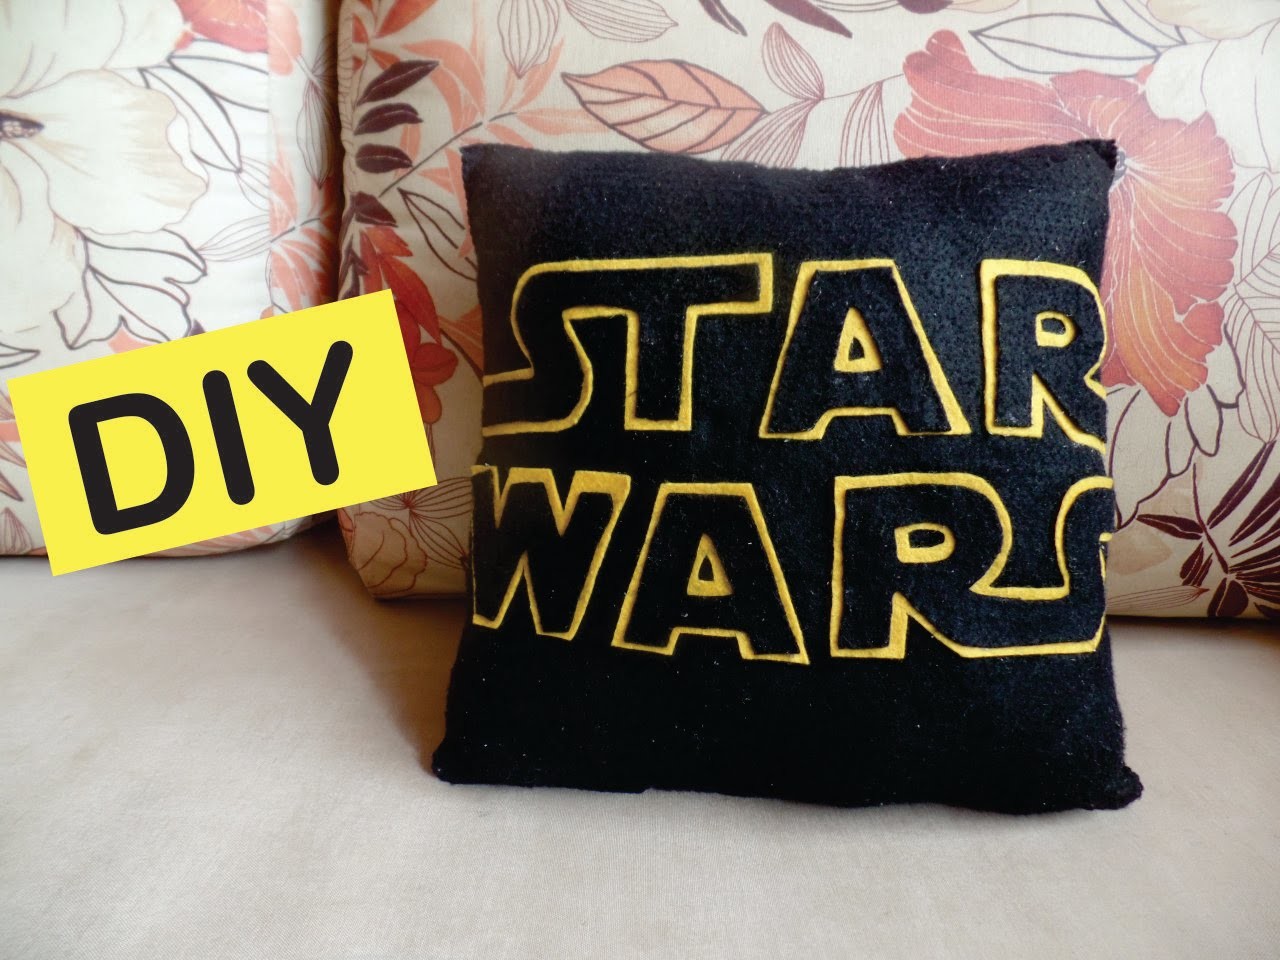 DIY: Almofada Star Wars - Faça você mesmo